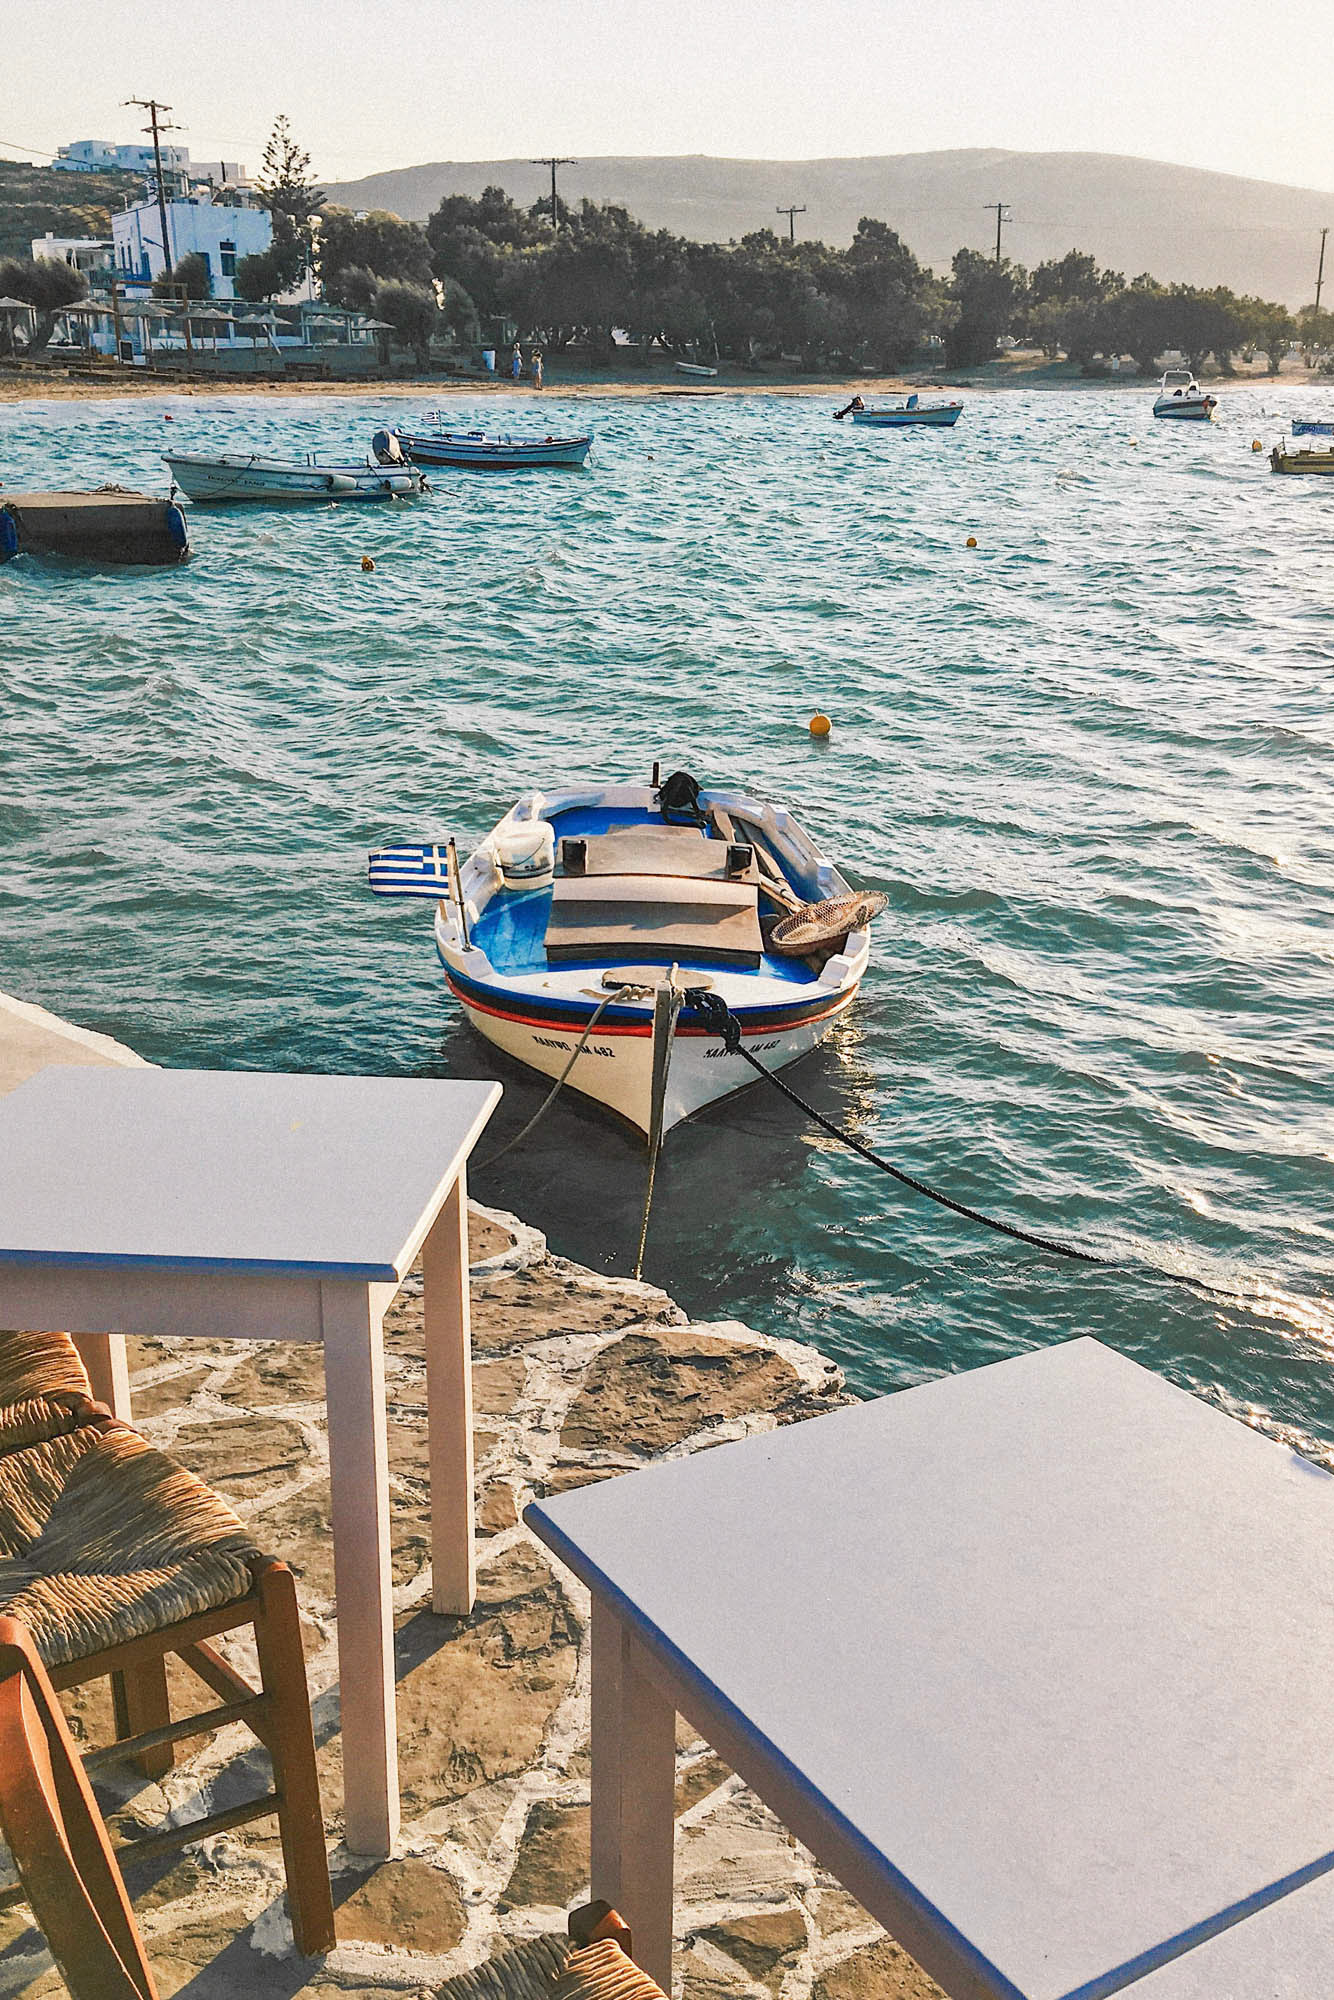 widok na łódkę kołyszącą się przy przystani ze stolikami, w tle morze